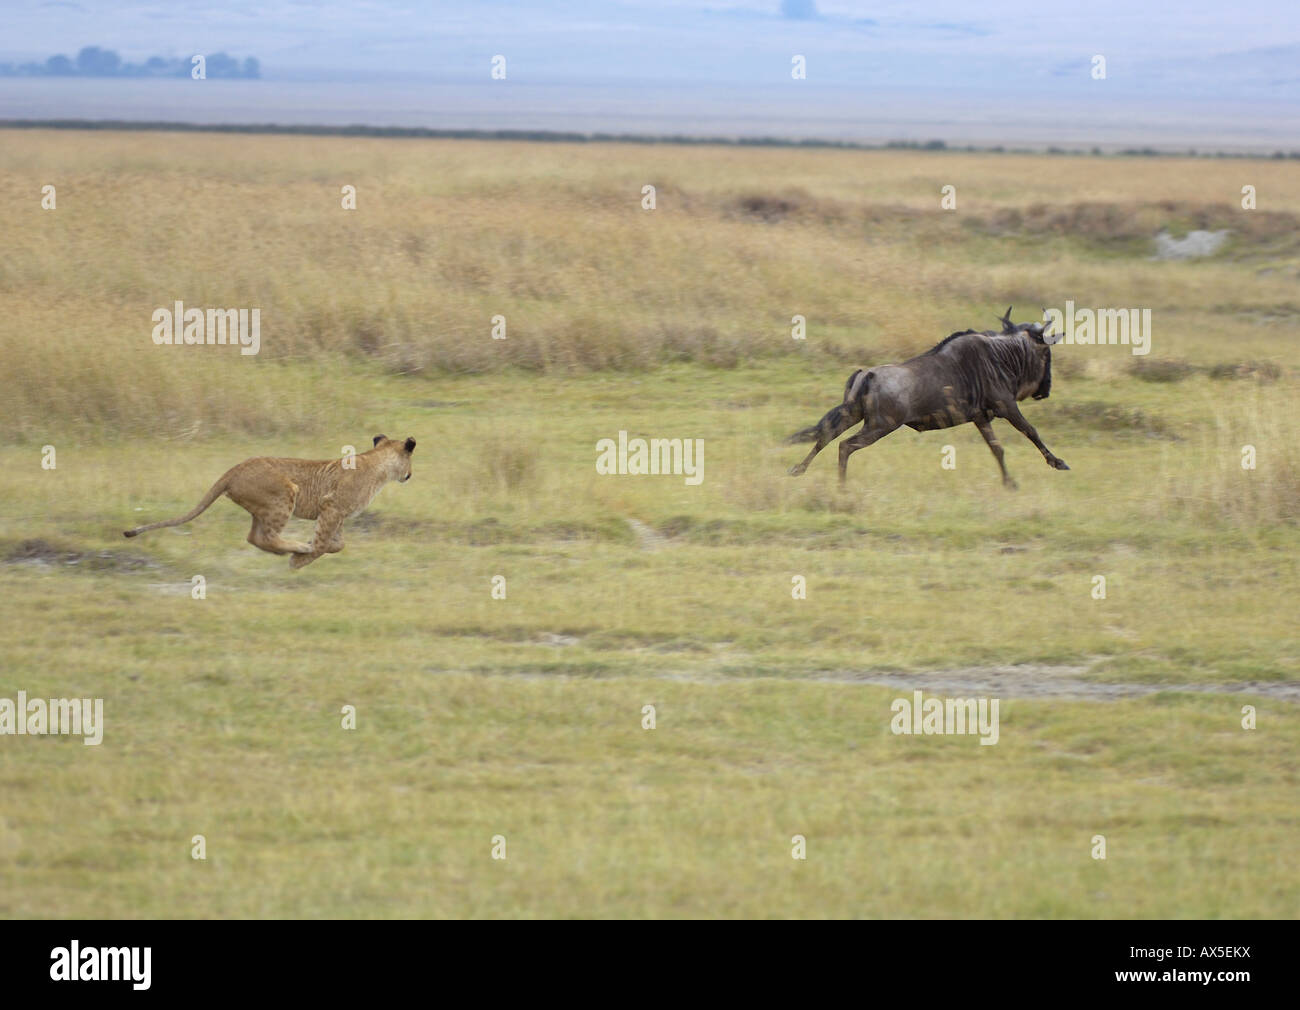 Lion (Panthera leo) morning hunt, lioness chasing a gnu, Ngorongoro Crater, Tanzania Stock Photo